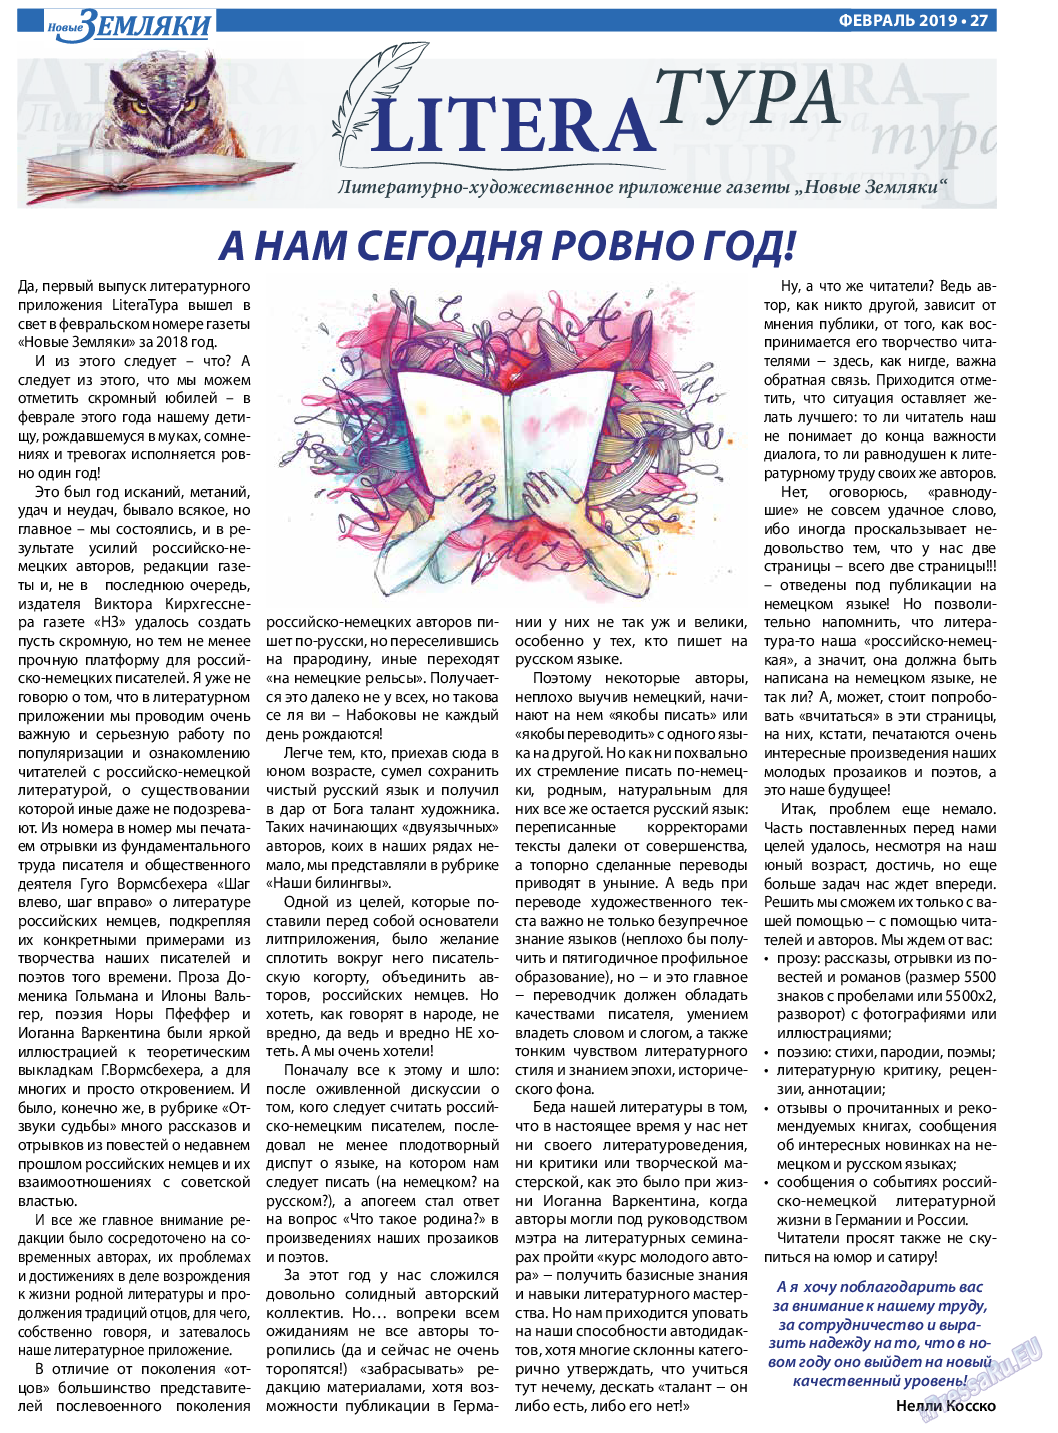 Новые Земляки, газета. 2019 №2 стр.27